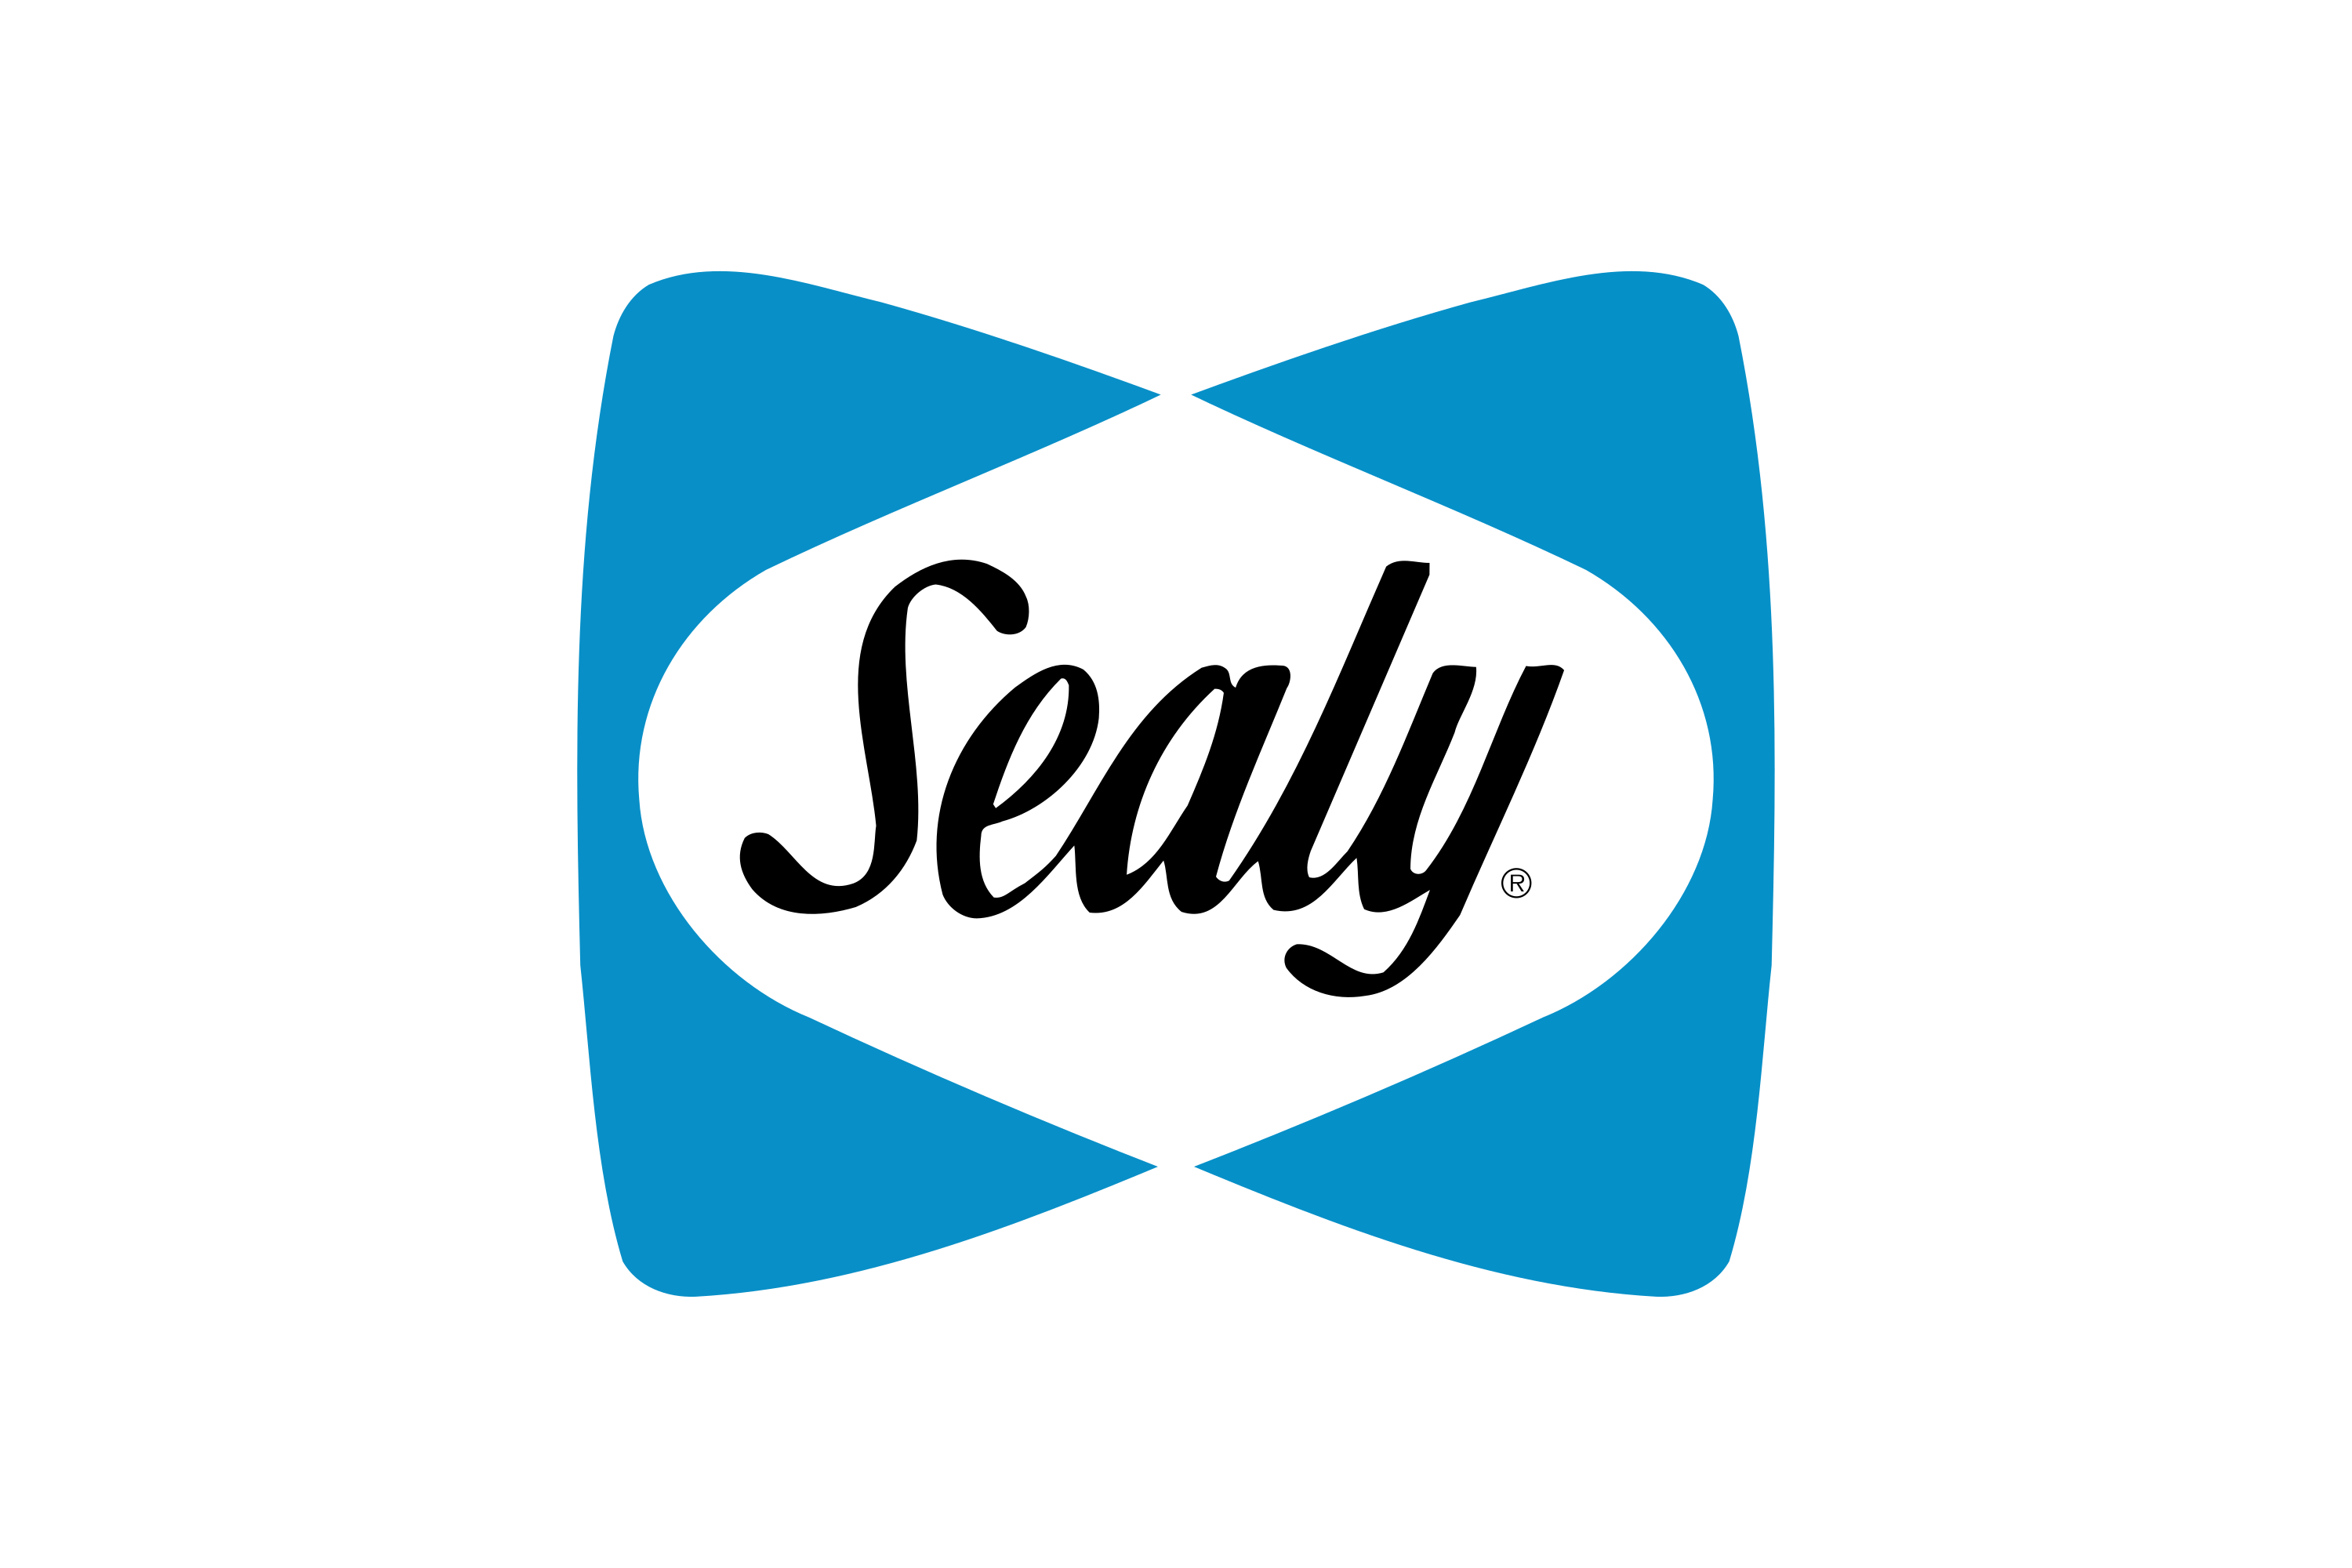 Sealy Corporation Logo 